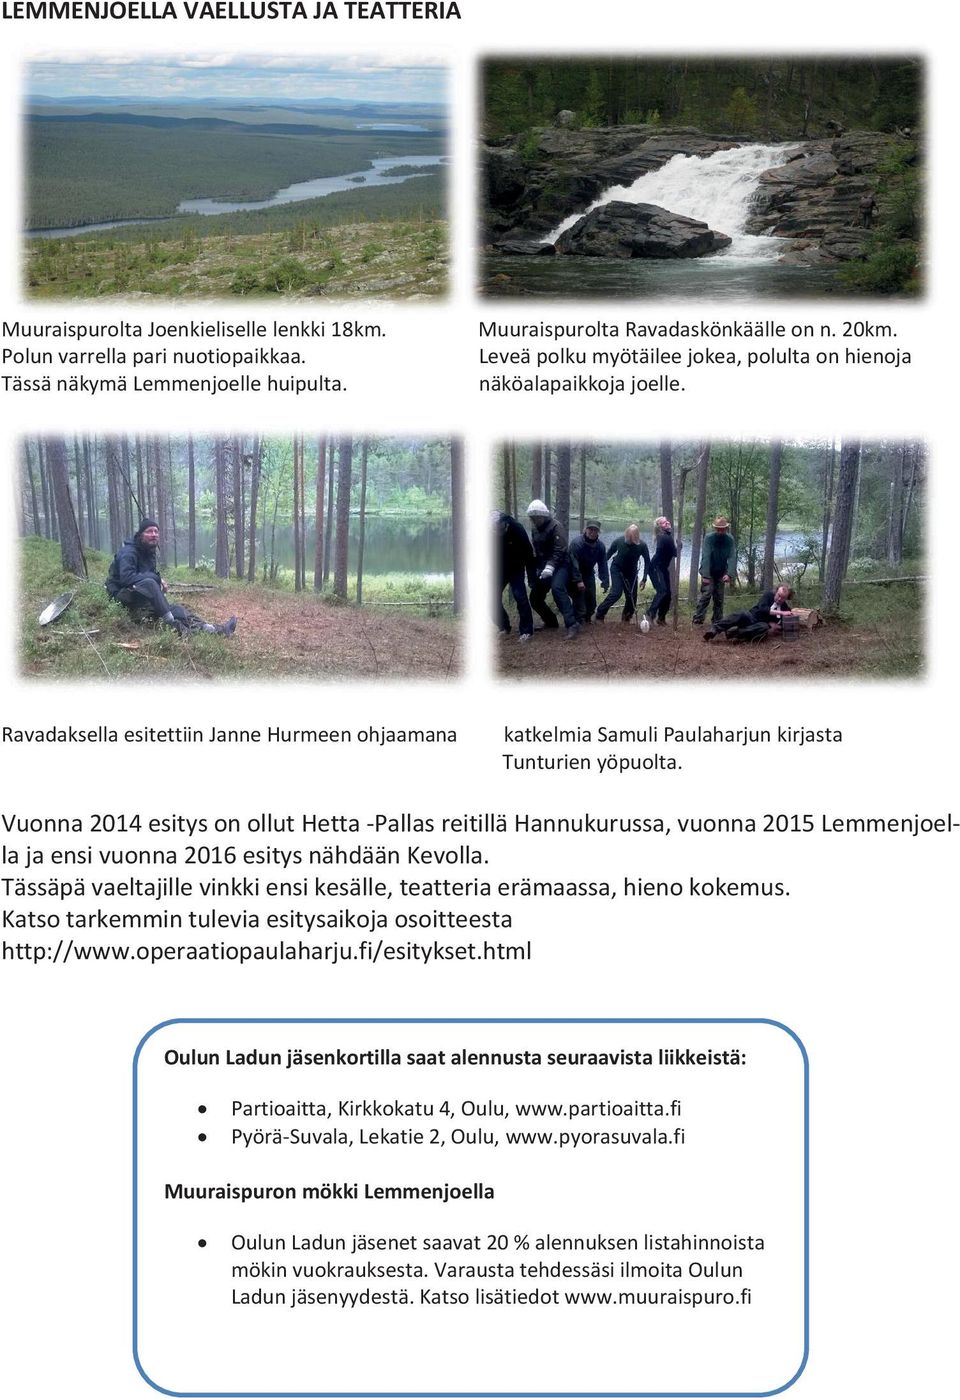 Vuonna 2014 esitys on ollut Hetta -Pallas reitillä Hannukurussa, vuonna 2015 Lemmenjoella ja ensi vuonna 2016 esitys nähdään Kevolla.